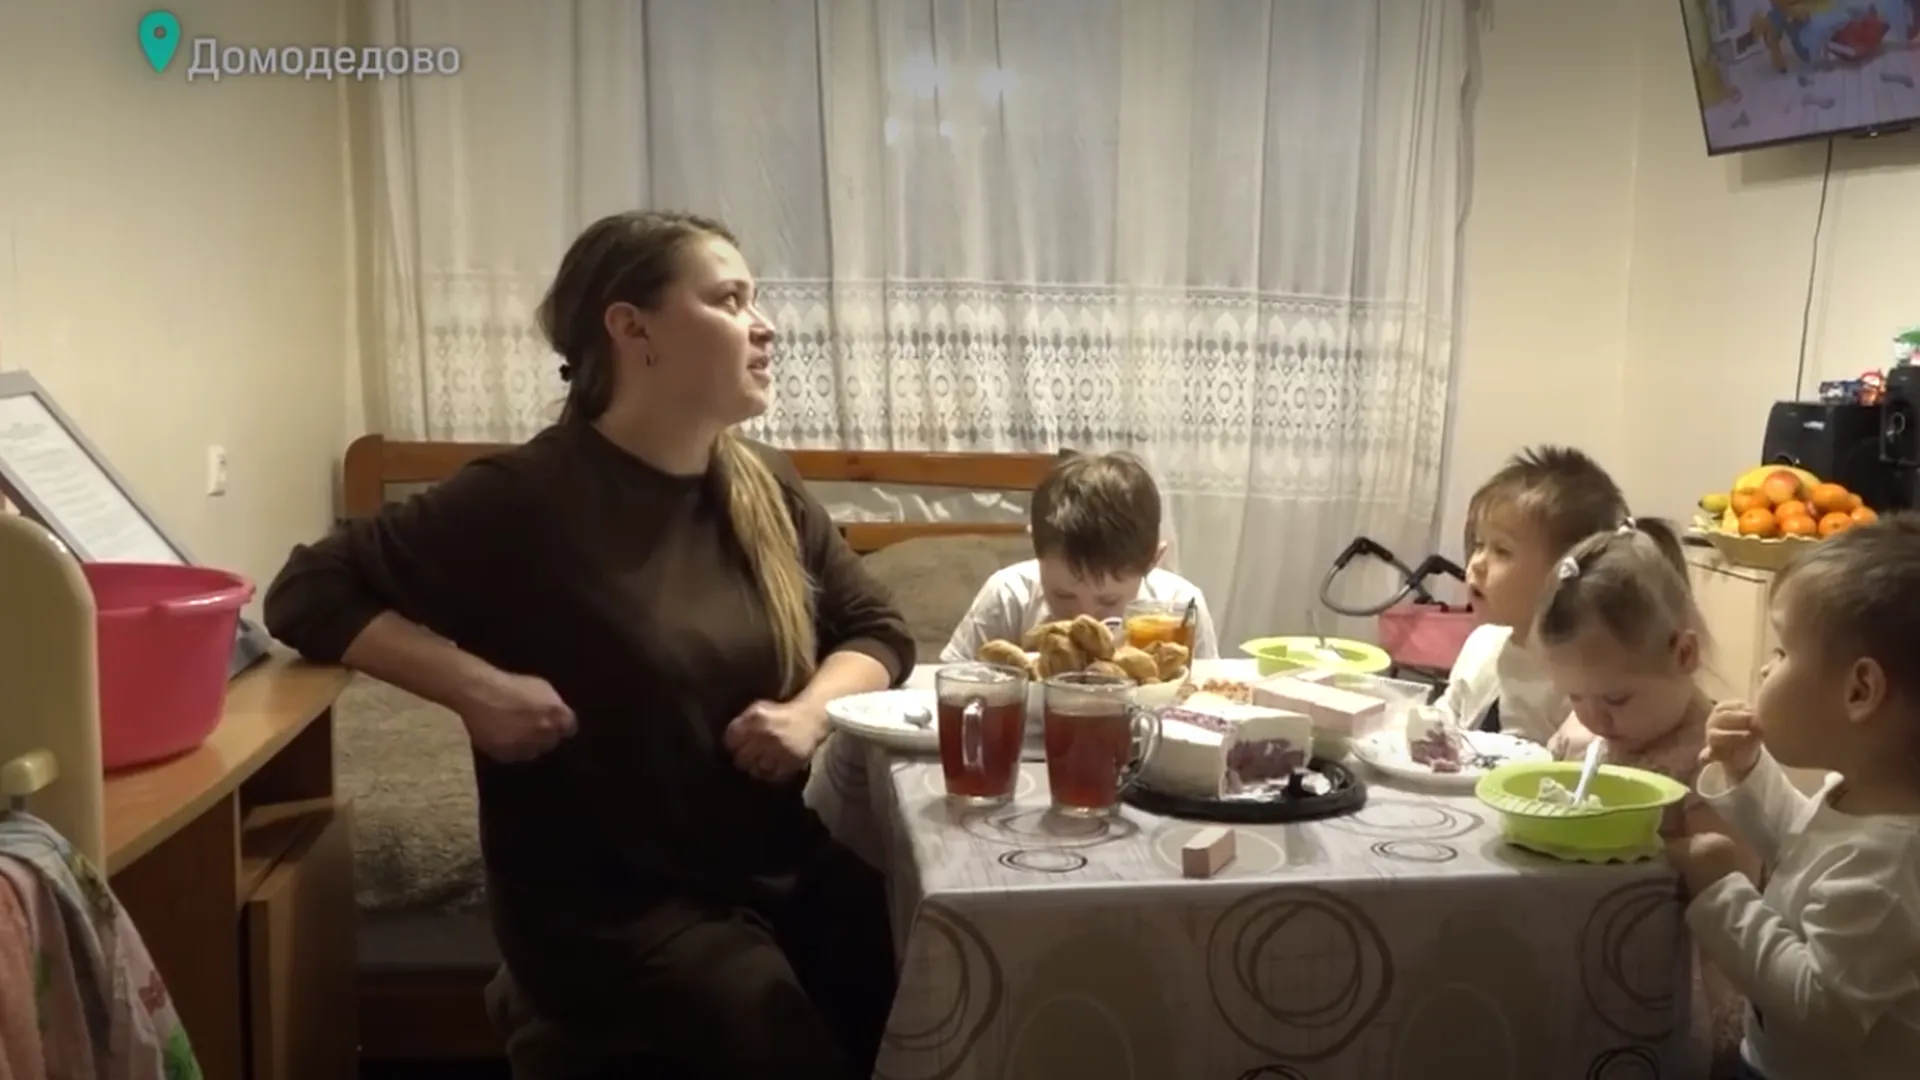 Еще одна многодетная семья в Домодедове приобрела квартиру благодаря жилищной субсидии